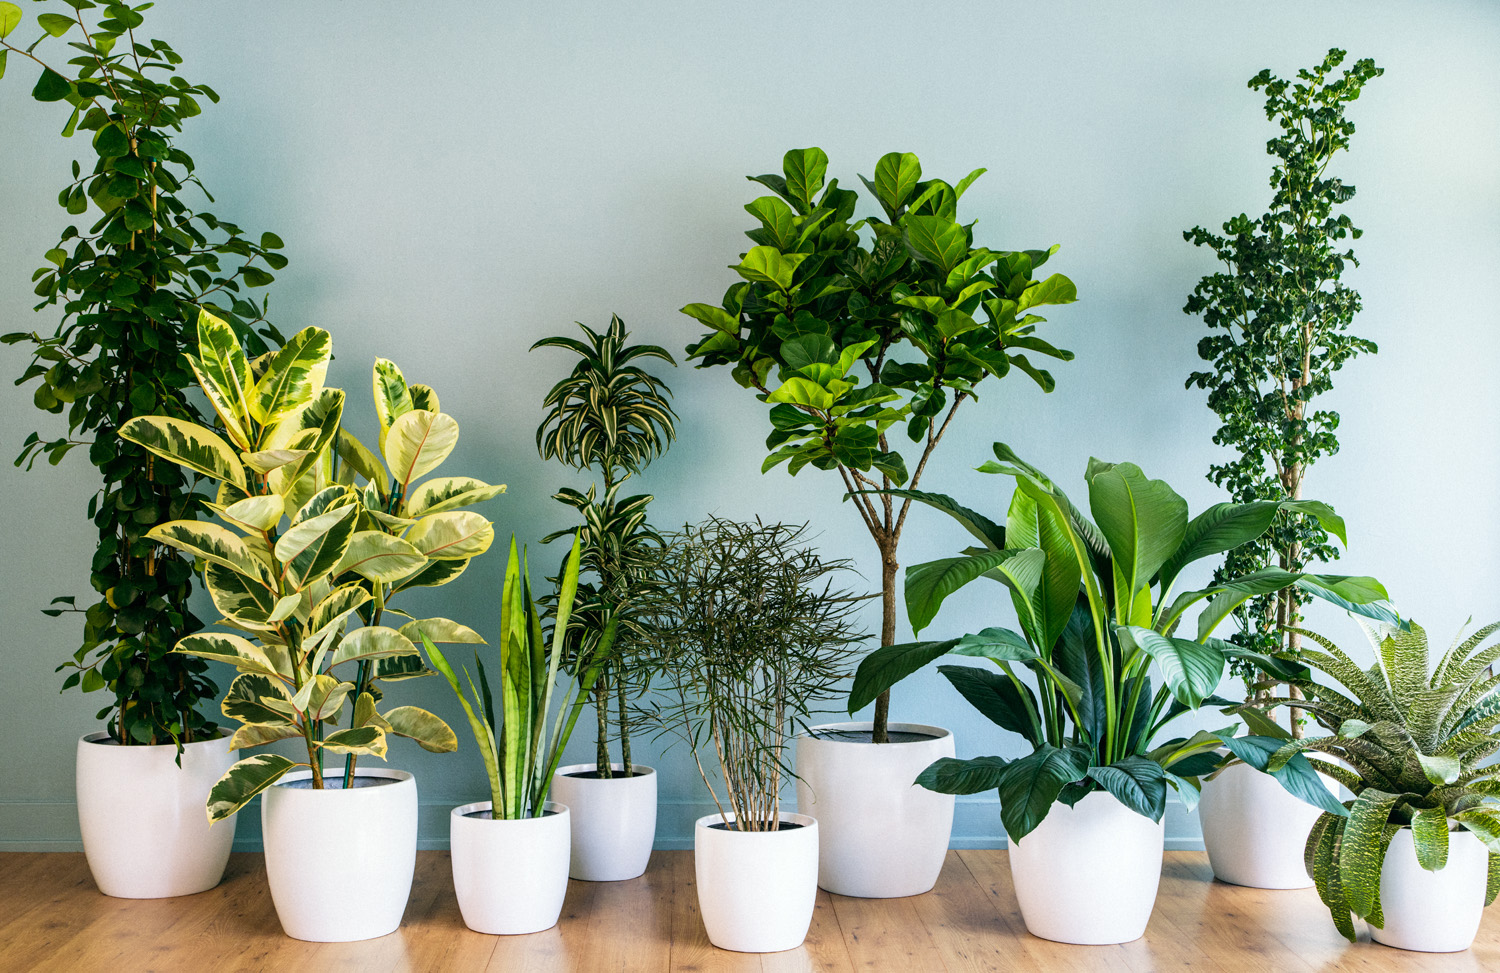 How to water indoor plants?